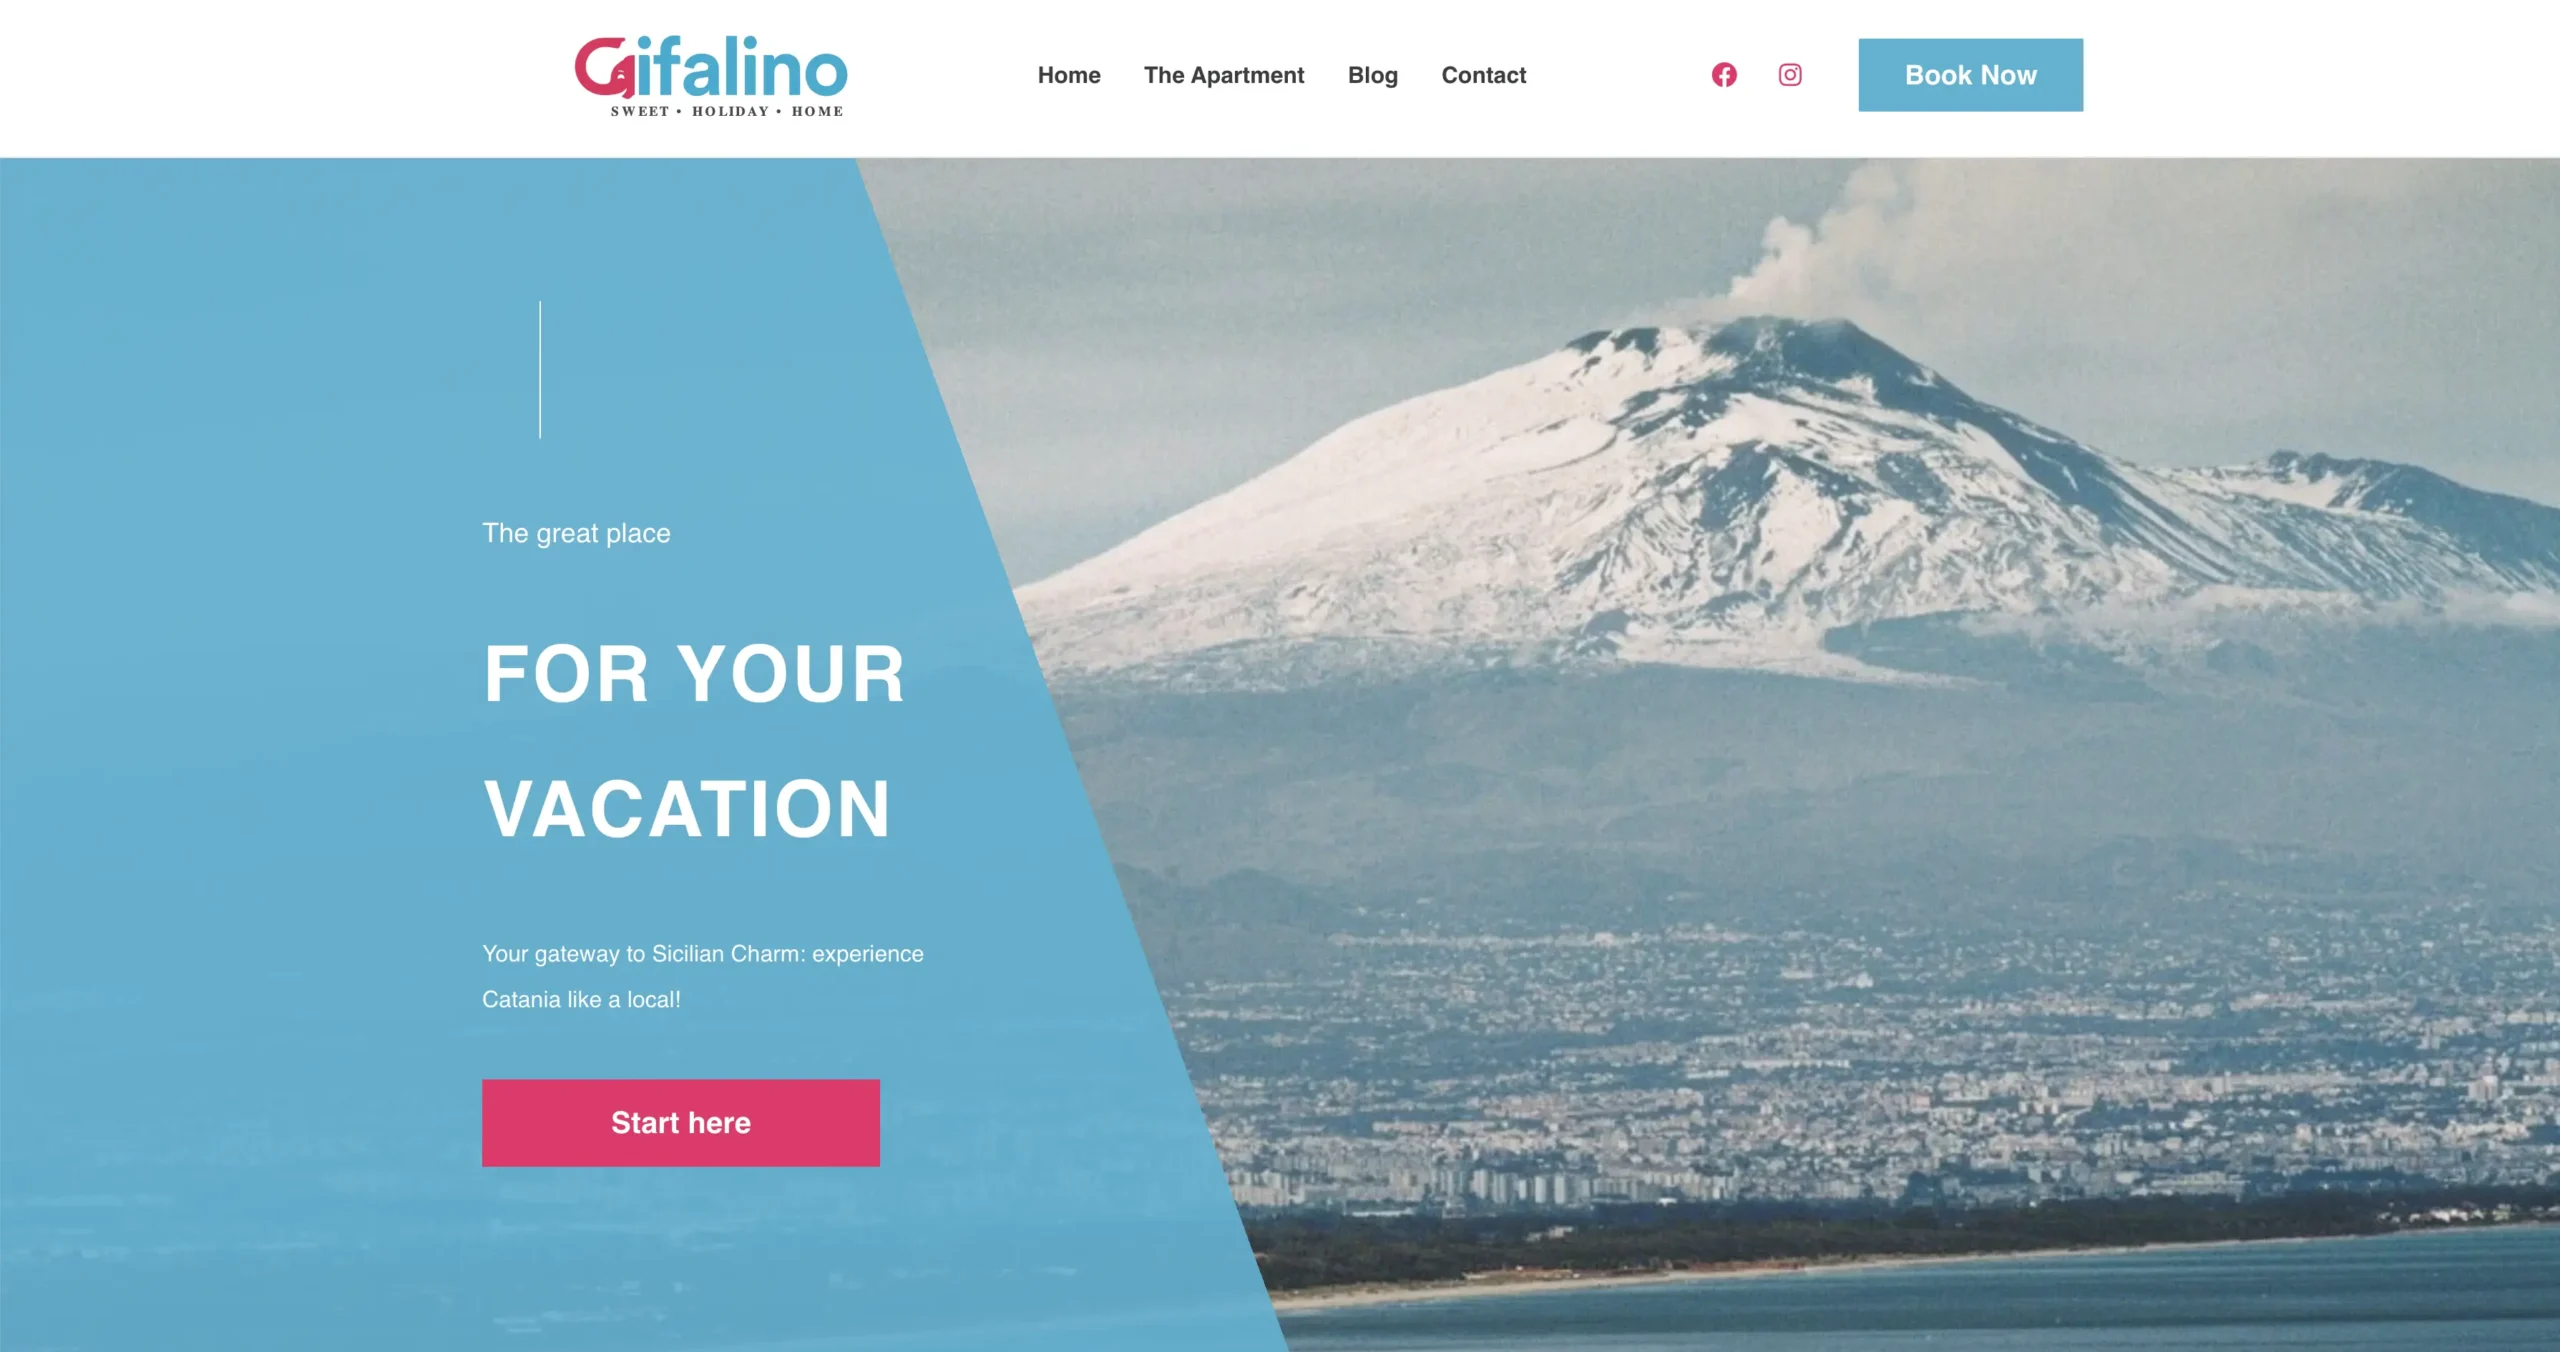 Cifalino.com